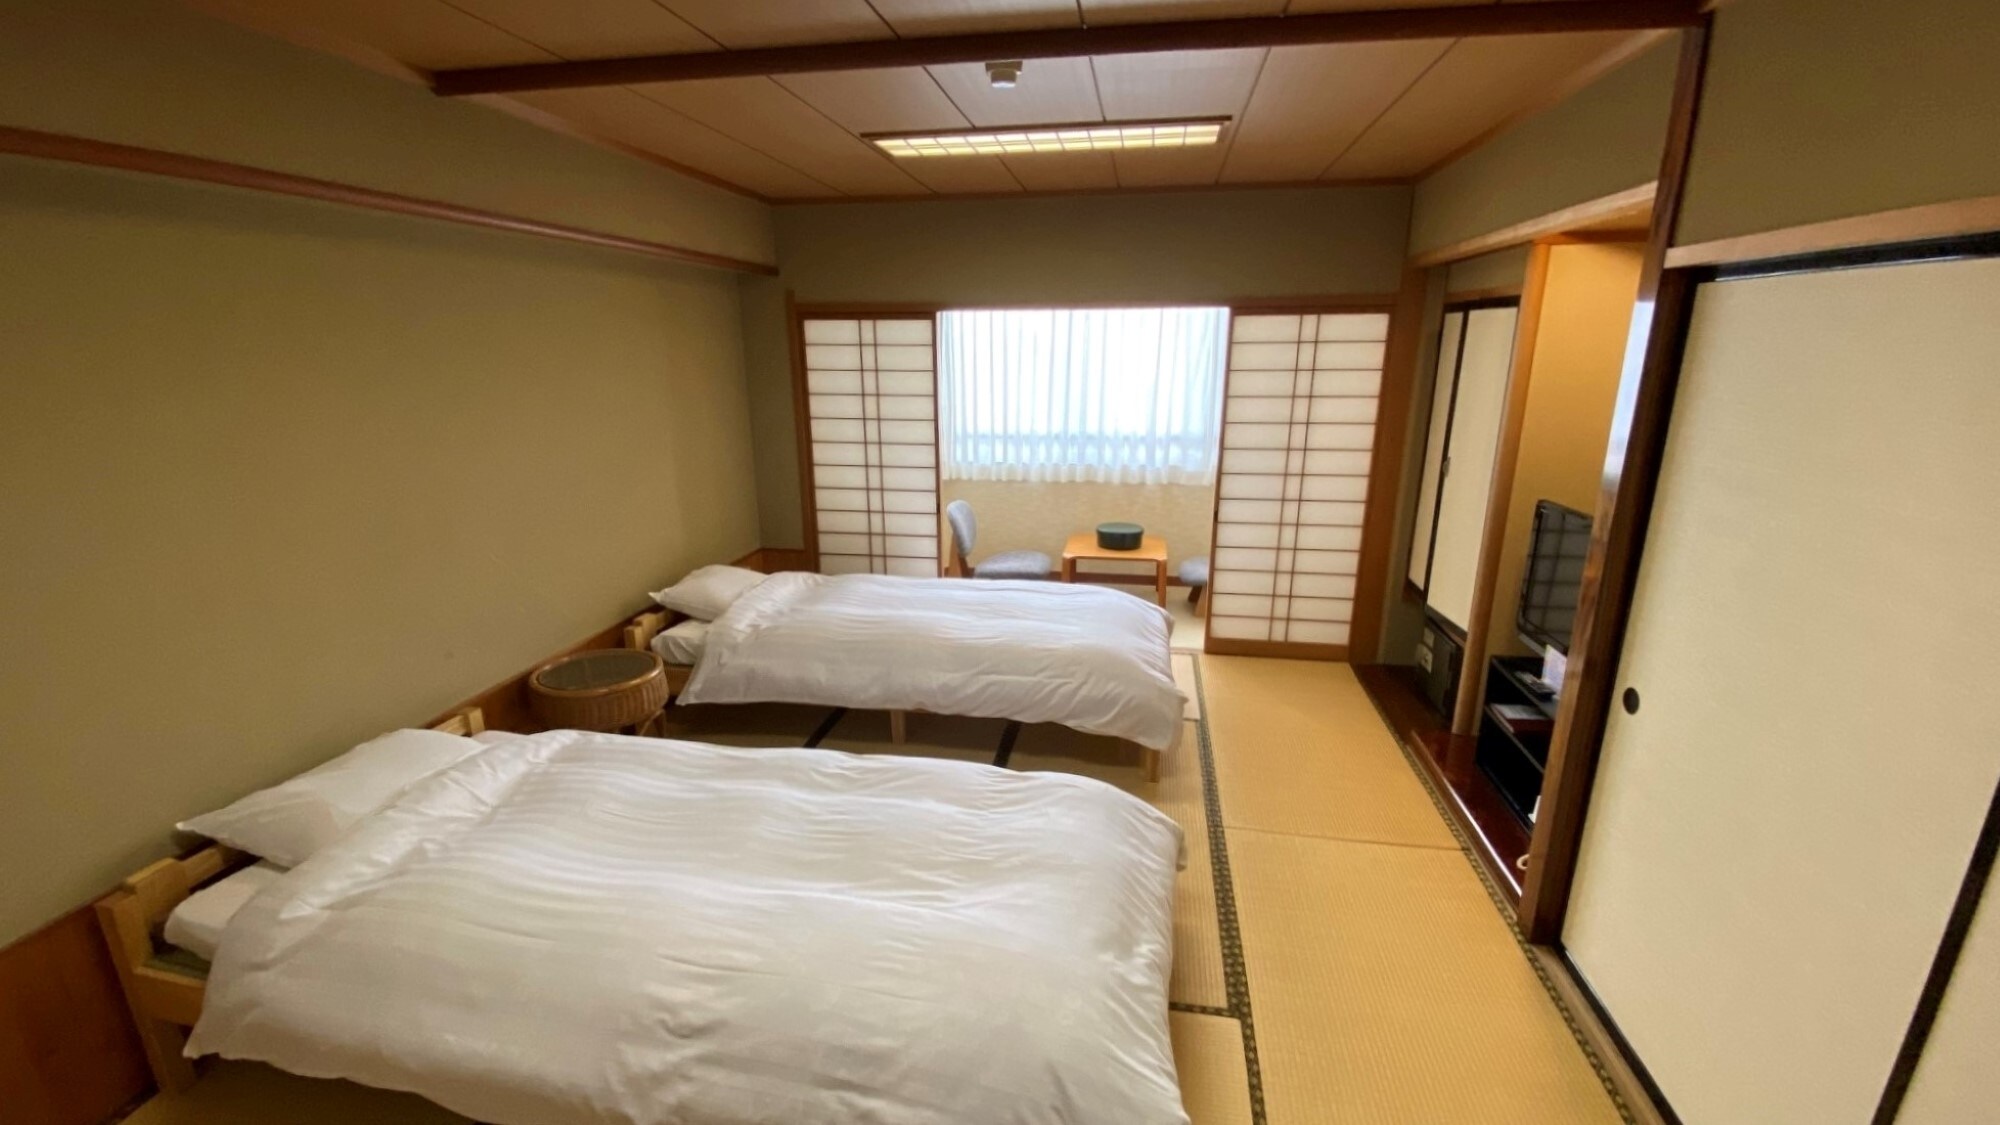 ห้องพัก (แบบเตียงญี่ปุ่น) เสื่อทาทามิ 10 ผืน / ห้ามสูบบุหรี่